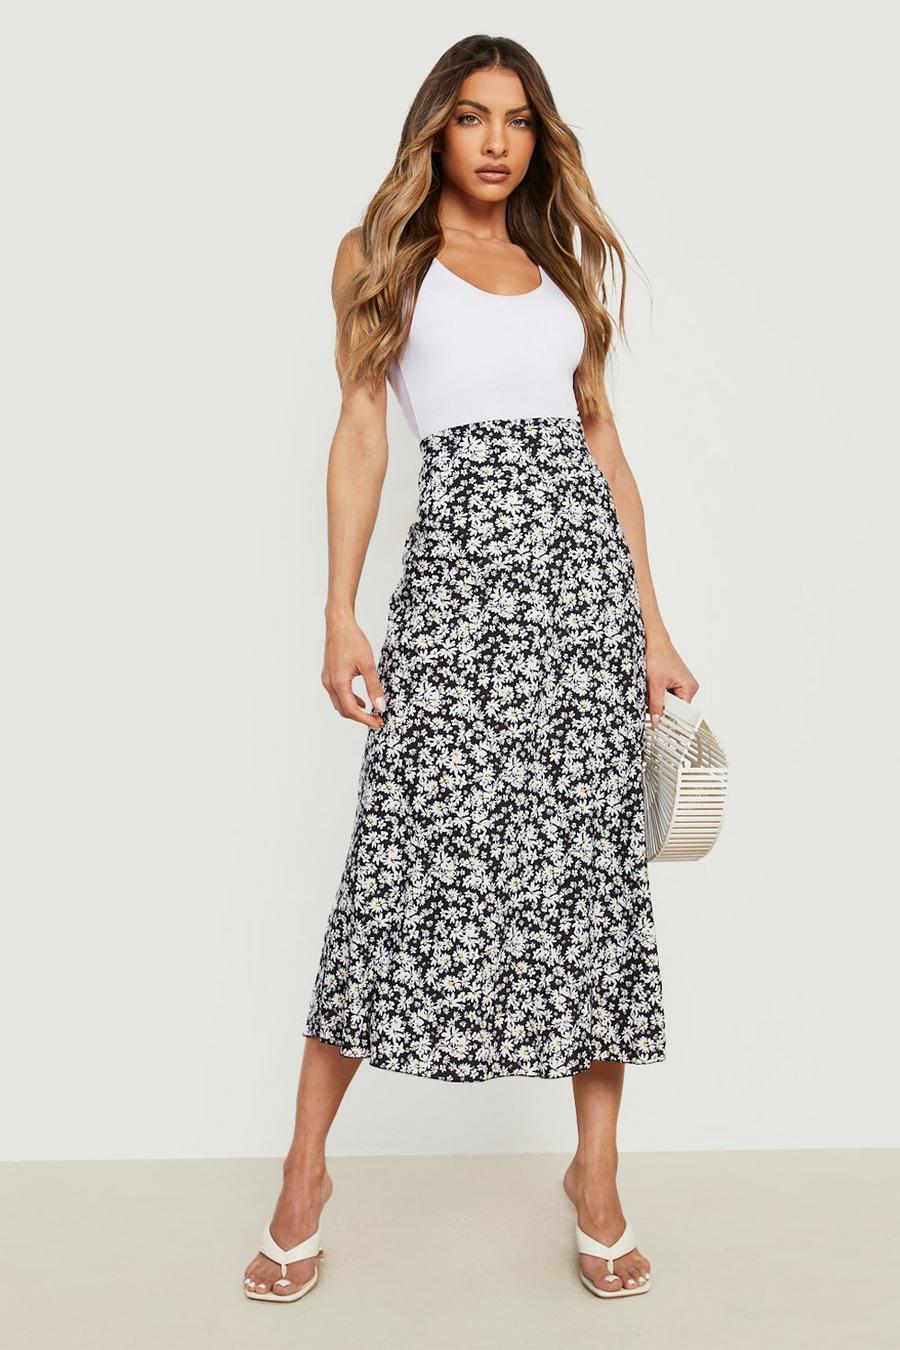 Mono Floral Print Light Weight Woven Maxi Skirt